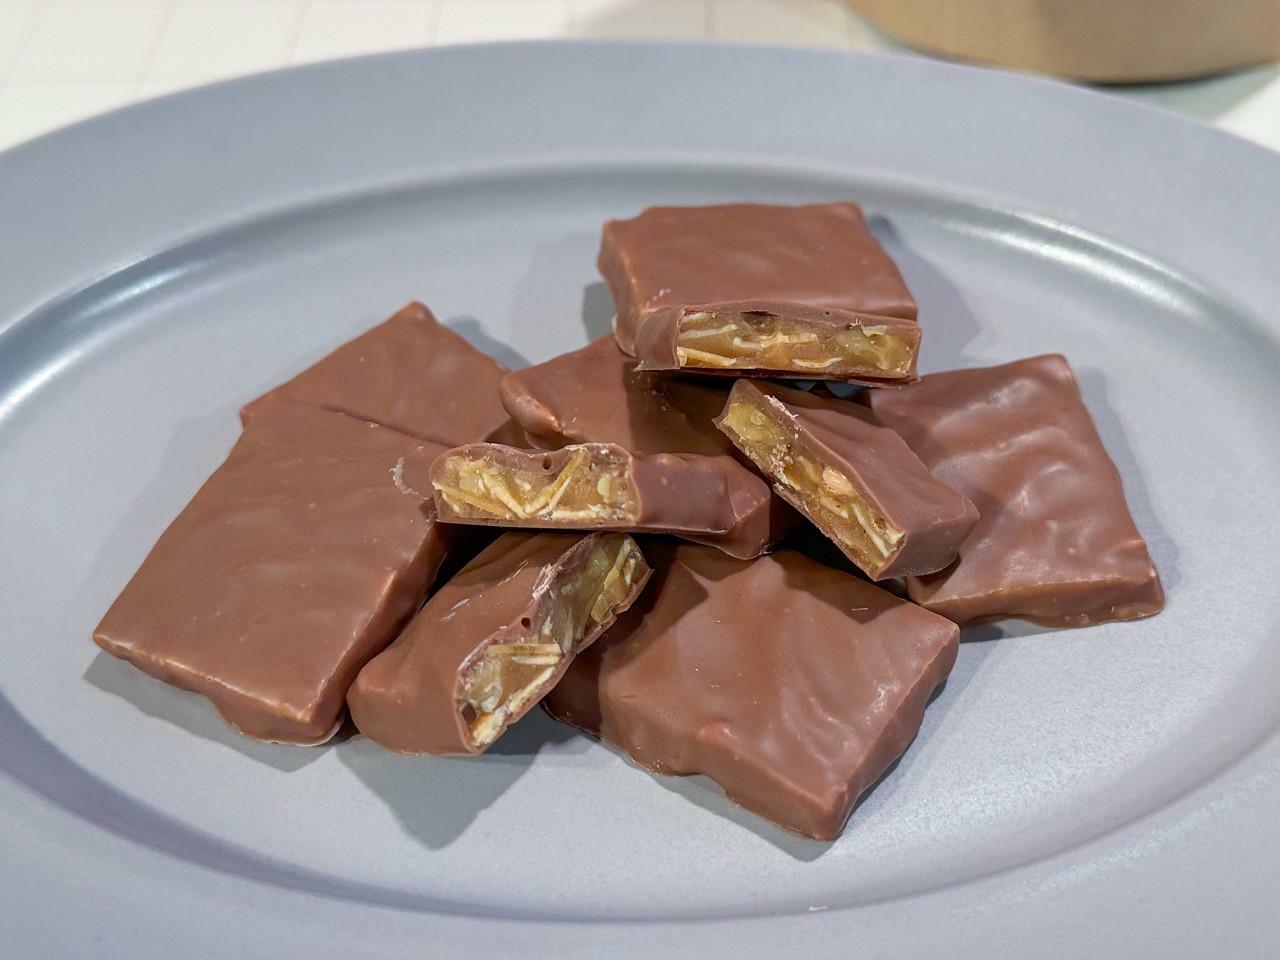 「Croustillant caramel chocolat（クリスティアン・キャラメル・ショコラ）」6個入り　1296円